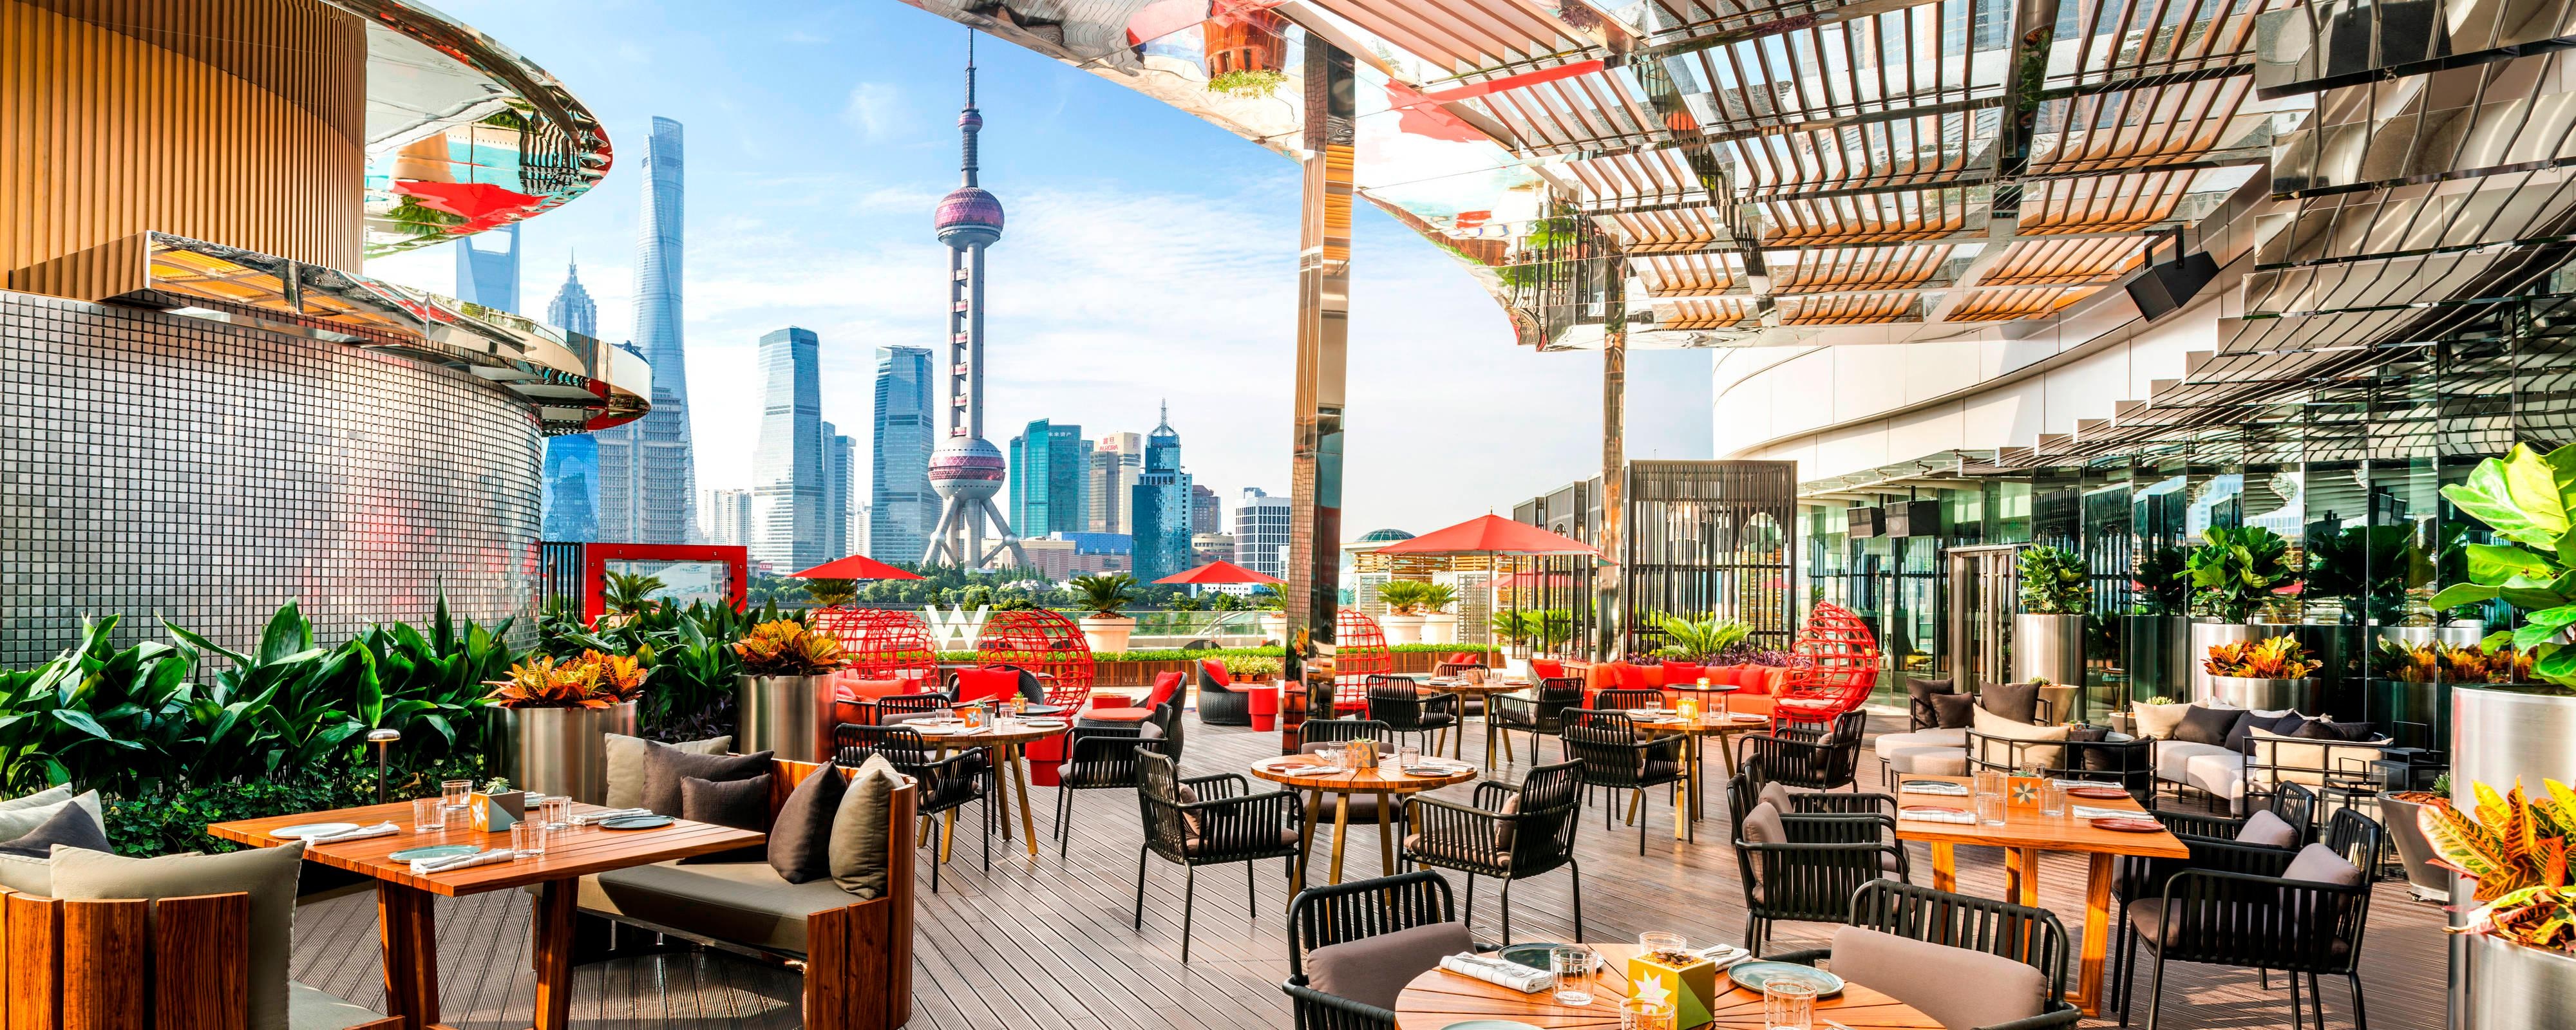 Restaurants on The Bund in Shanghai | W Shanghai - The Bund